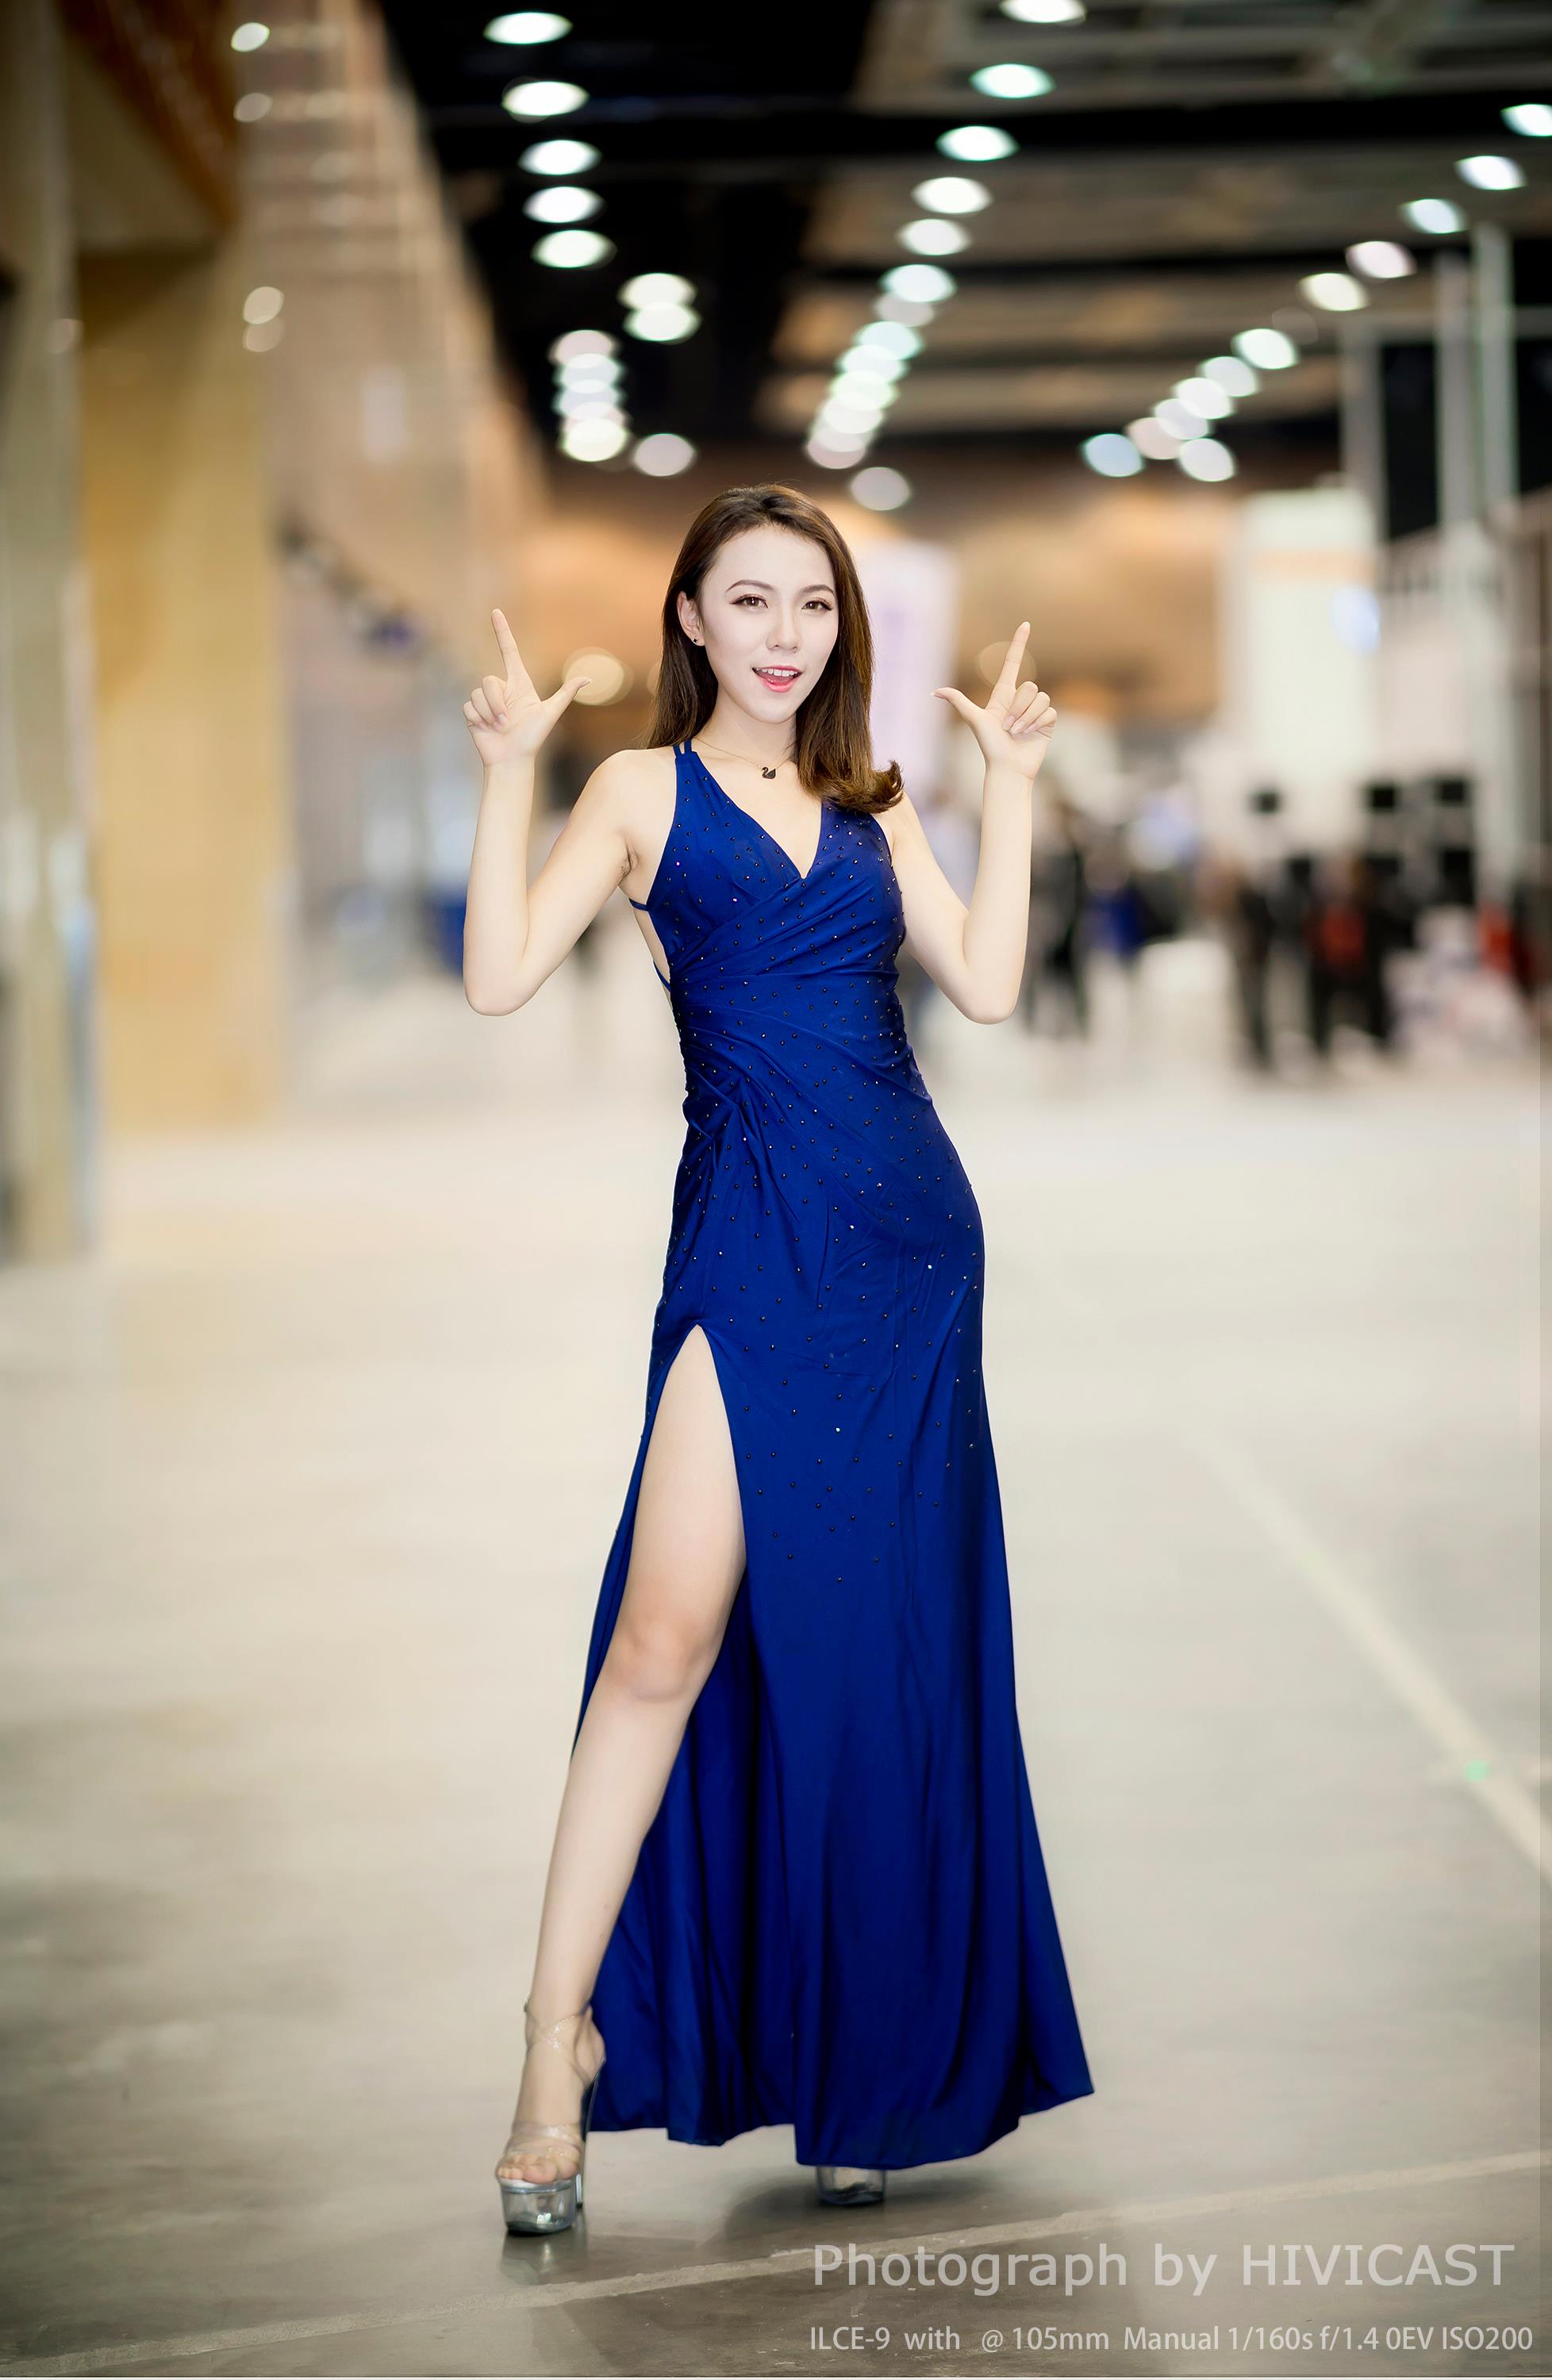 2017沈阳车展 北京现代汽车展台 美女车模蓝色高叉裸背连身裙写真  第9张